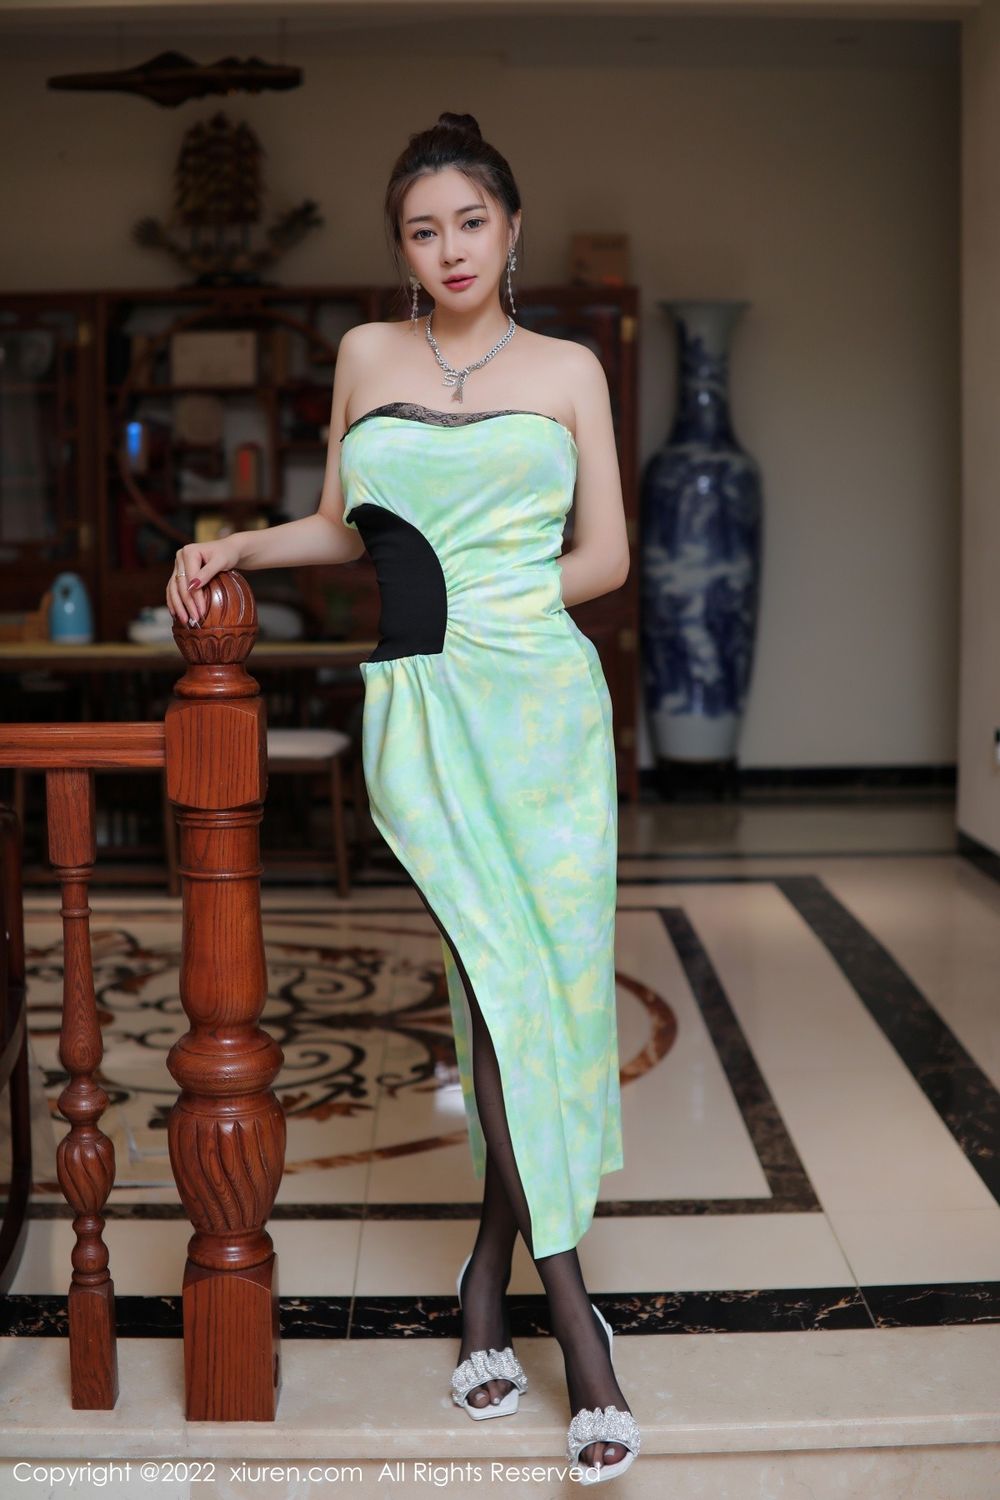 美女模特凯竹Vision绿色连衣长裙搭配黑丝系列写真